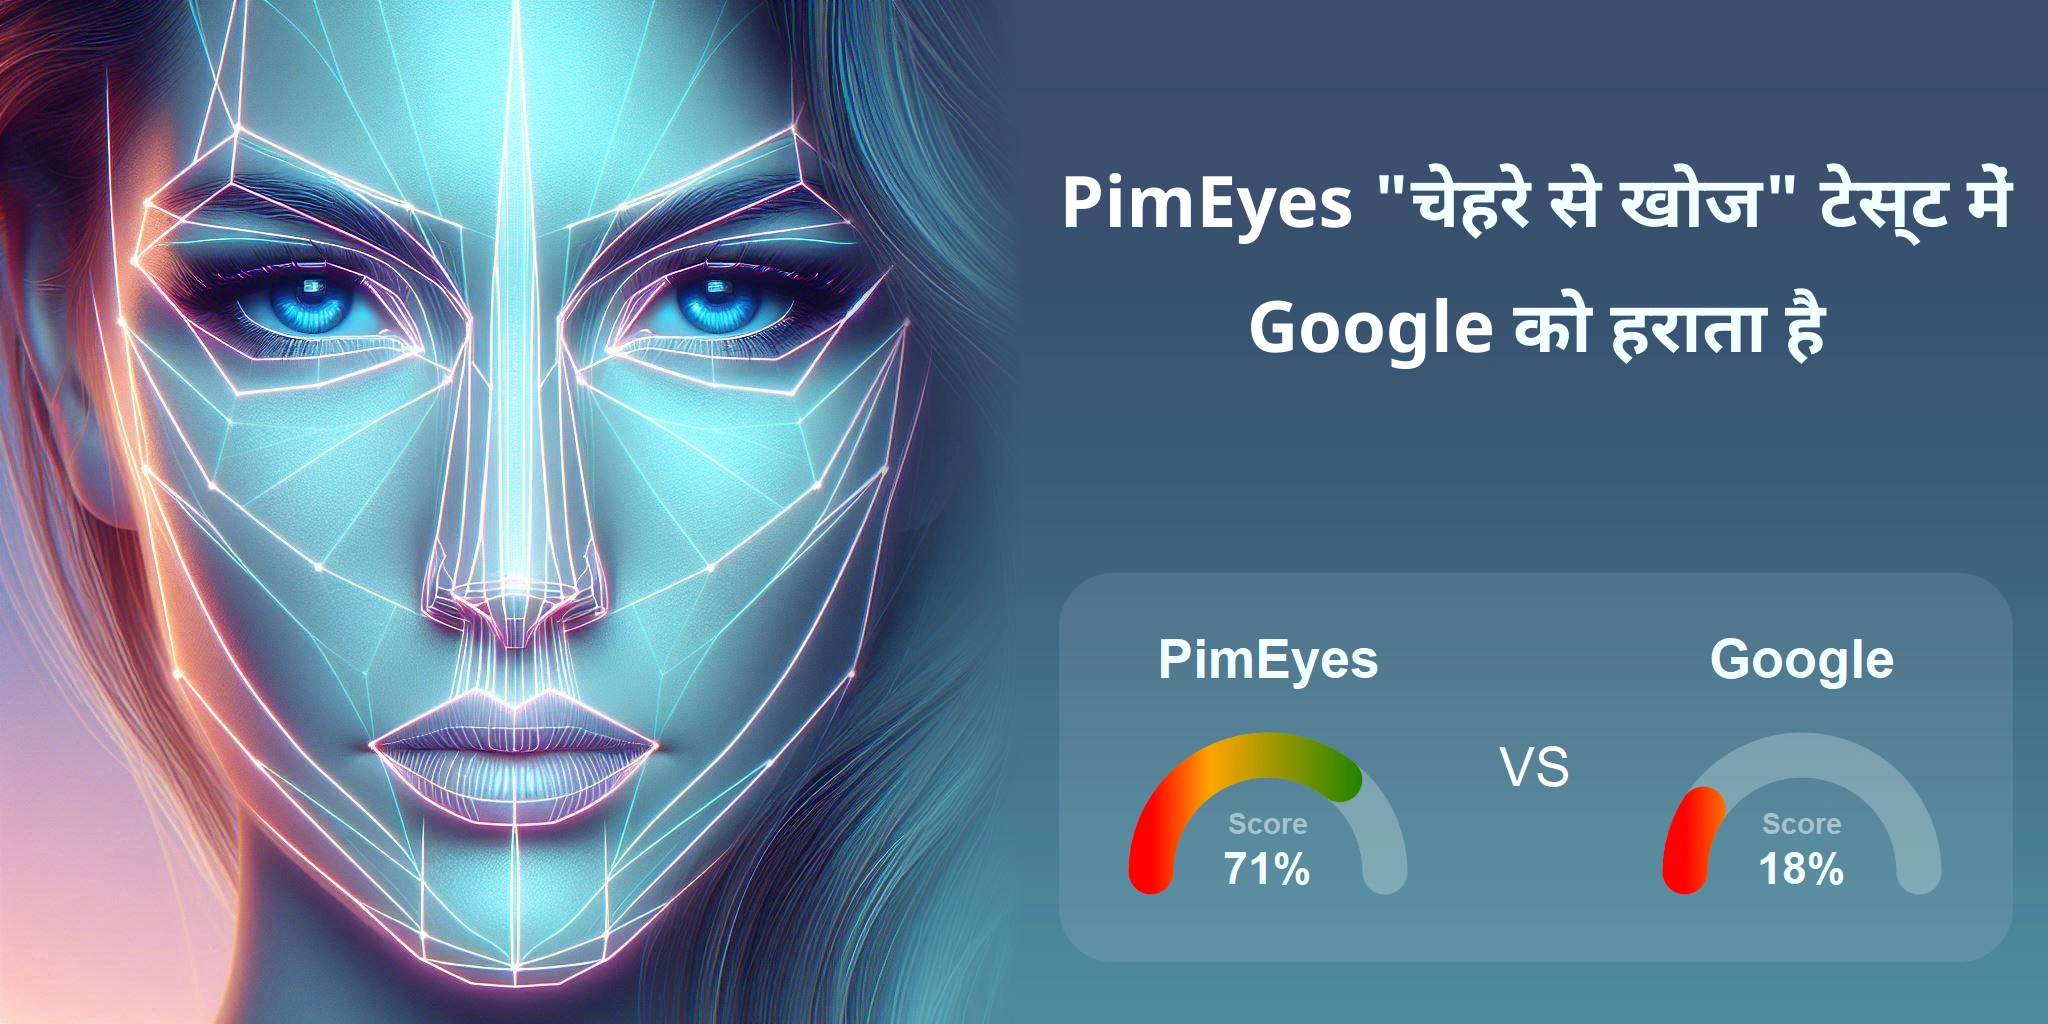 चेहरे की खोज के लिए कौन बेहतर है: <br>PimEyes या Google?